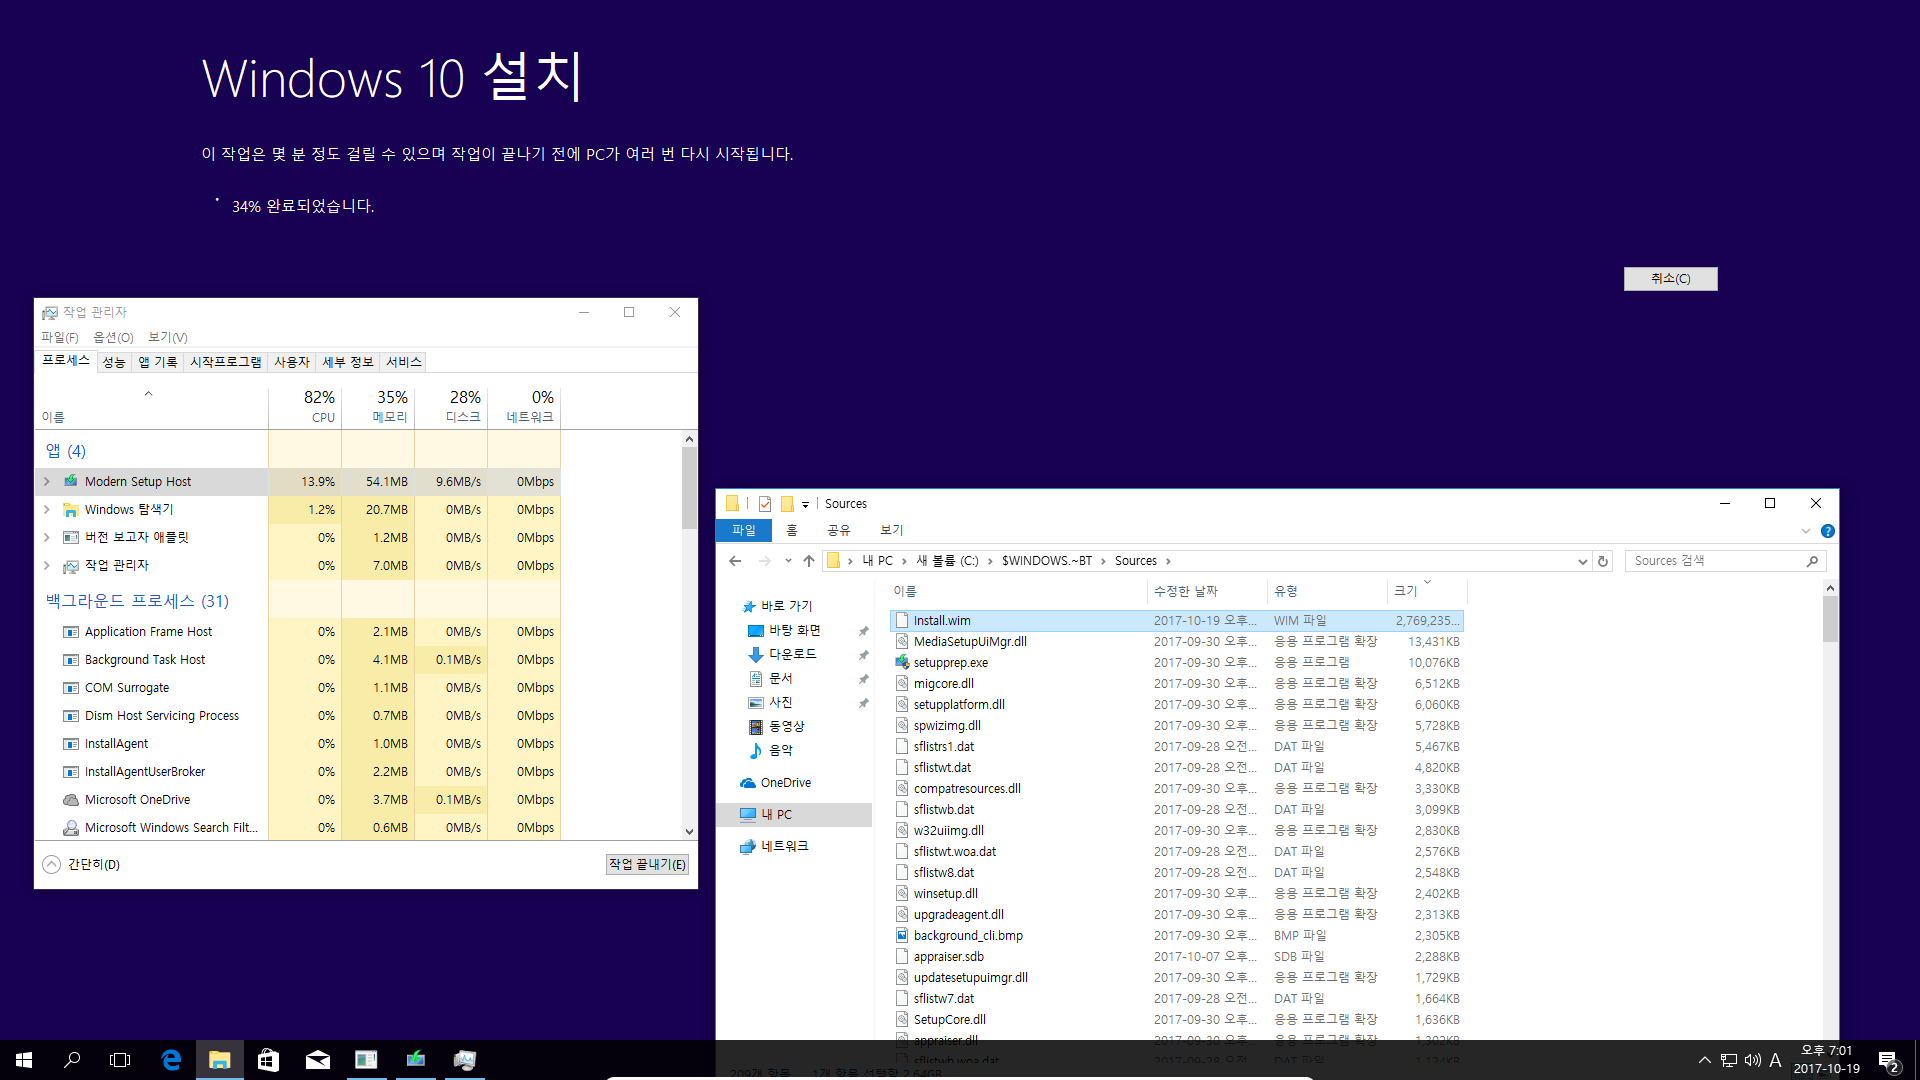 Windows 10 버전1709 엔터프라이즈로 업그레이드 테스트 - 버전1703 에서 - ISO 더블클릭 또는 엔터로 탑재 후에 setup.exe 실행으로 업그레이드-오잉 뭔가 다운로드 하네요 2017-10-19_190113.png